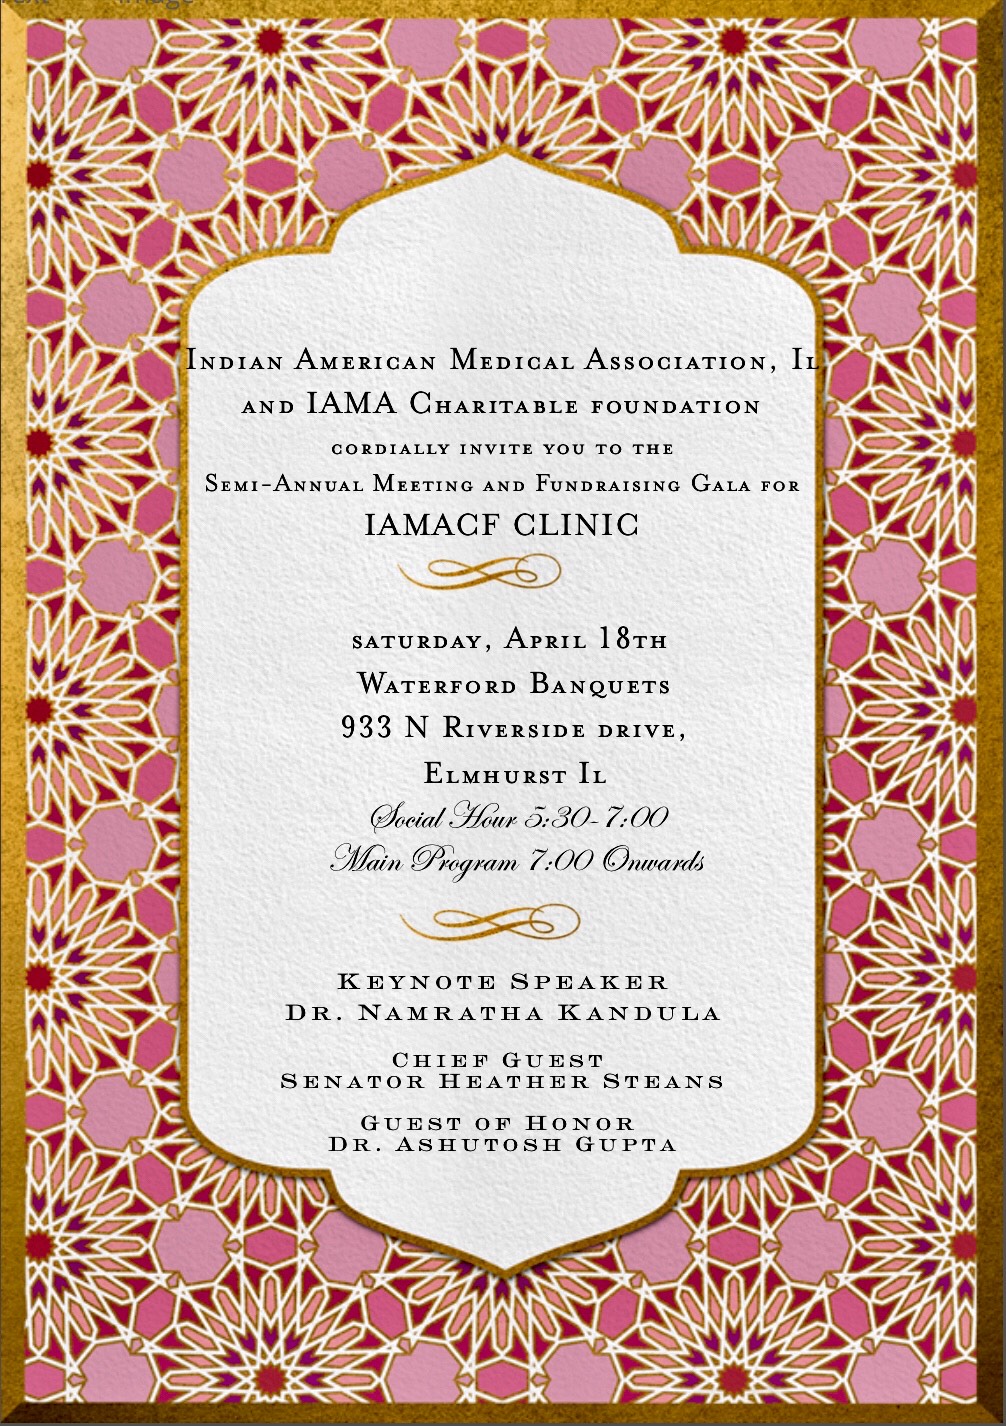 IAMA CF Clinic Annual Gala